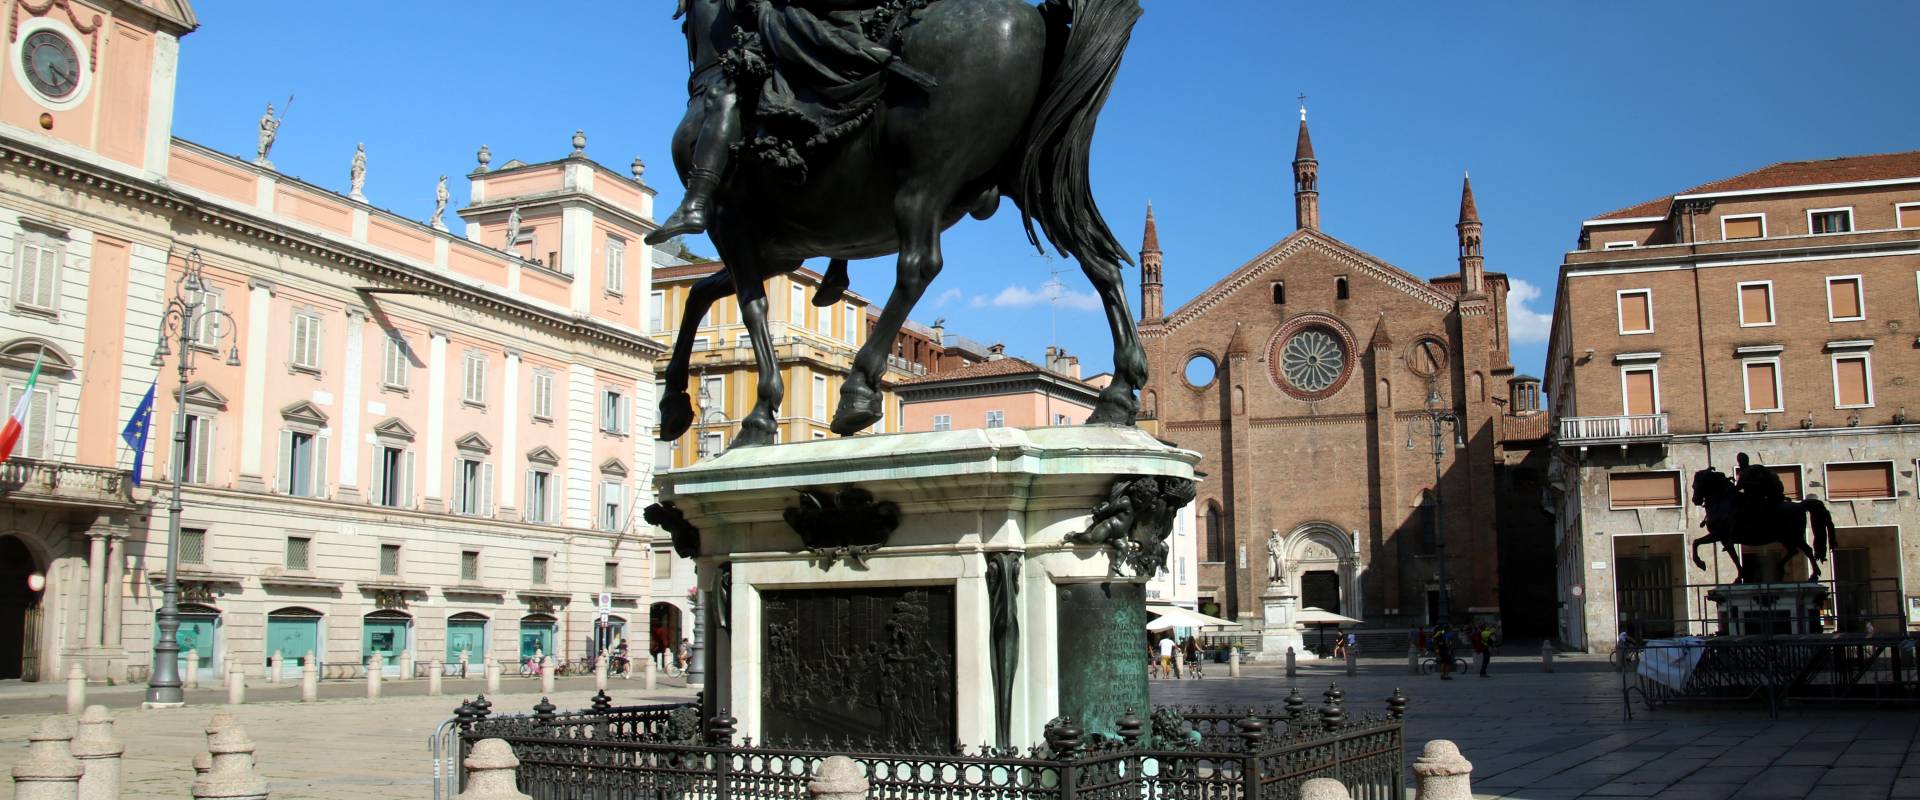 Francesco Mochi, Monumento in bronzo ad Ranuccio I Farnese 22 foto di Mongolo1984